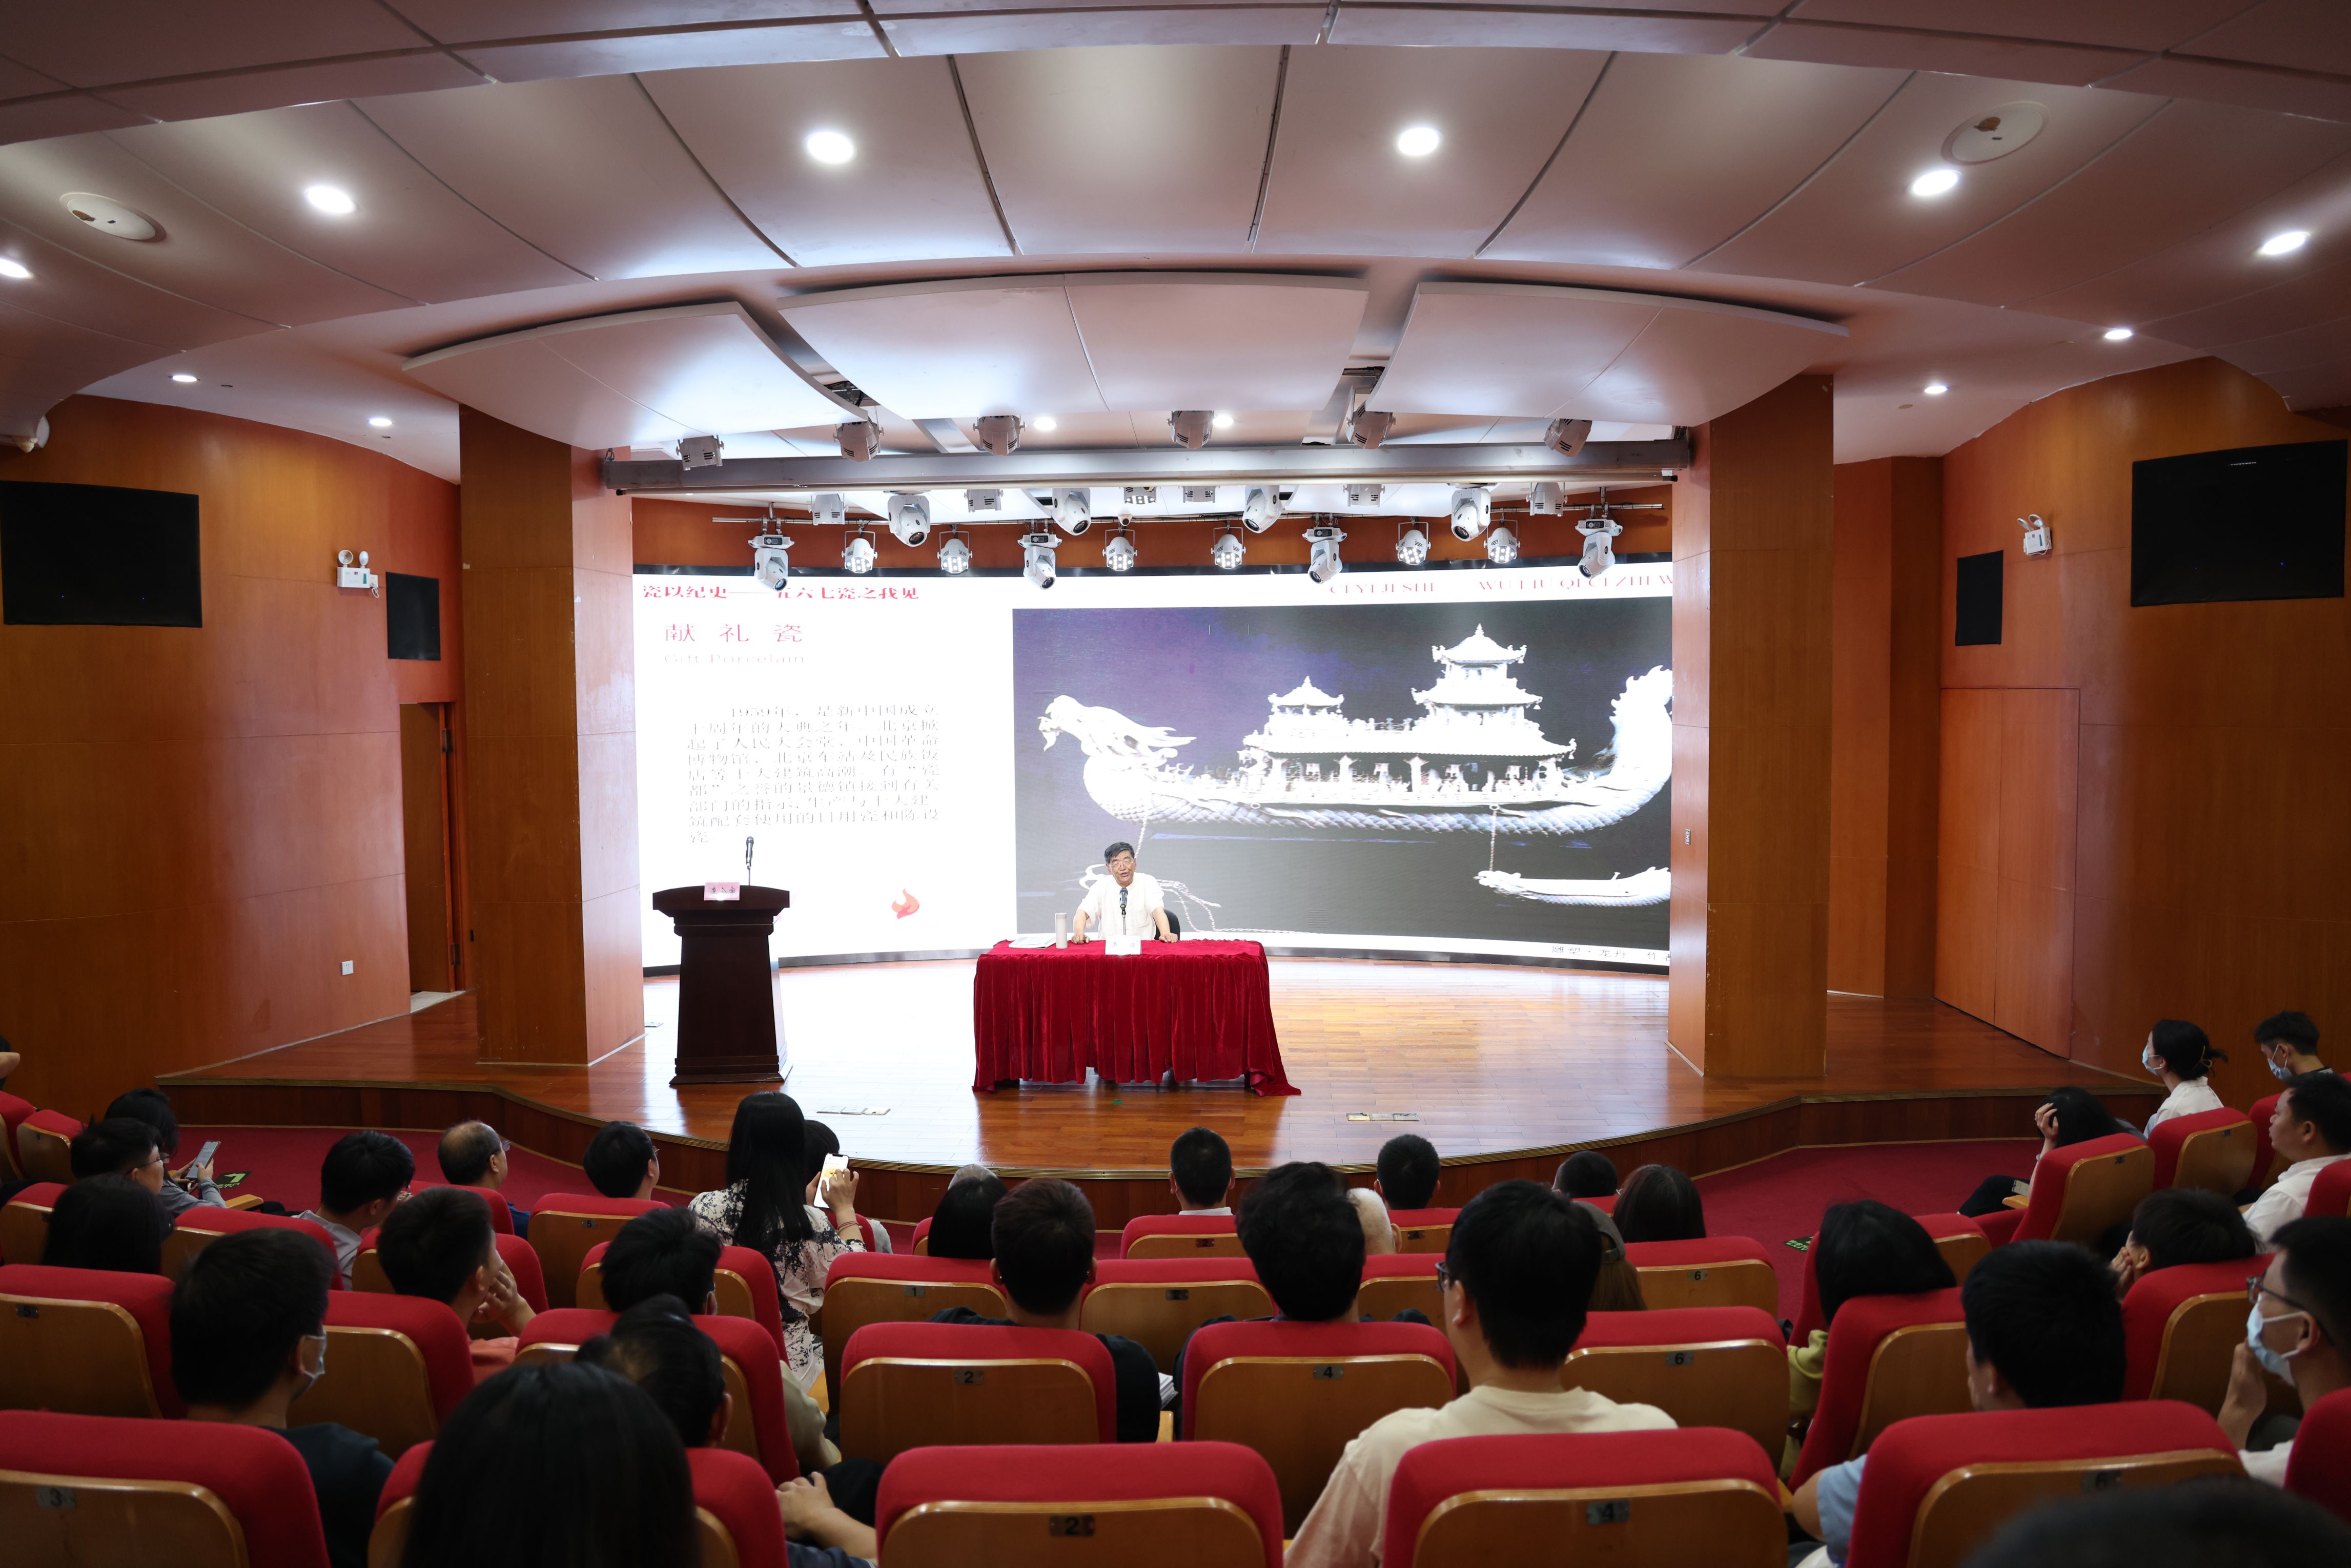 講述陶瓷紅色故事 寶安西鄉街道舉辦「新中國567陶瓷紅色文化」講座